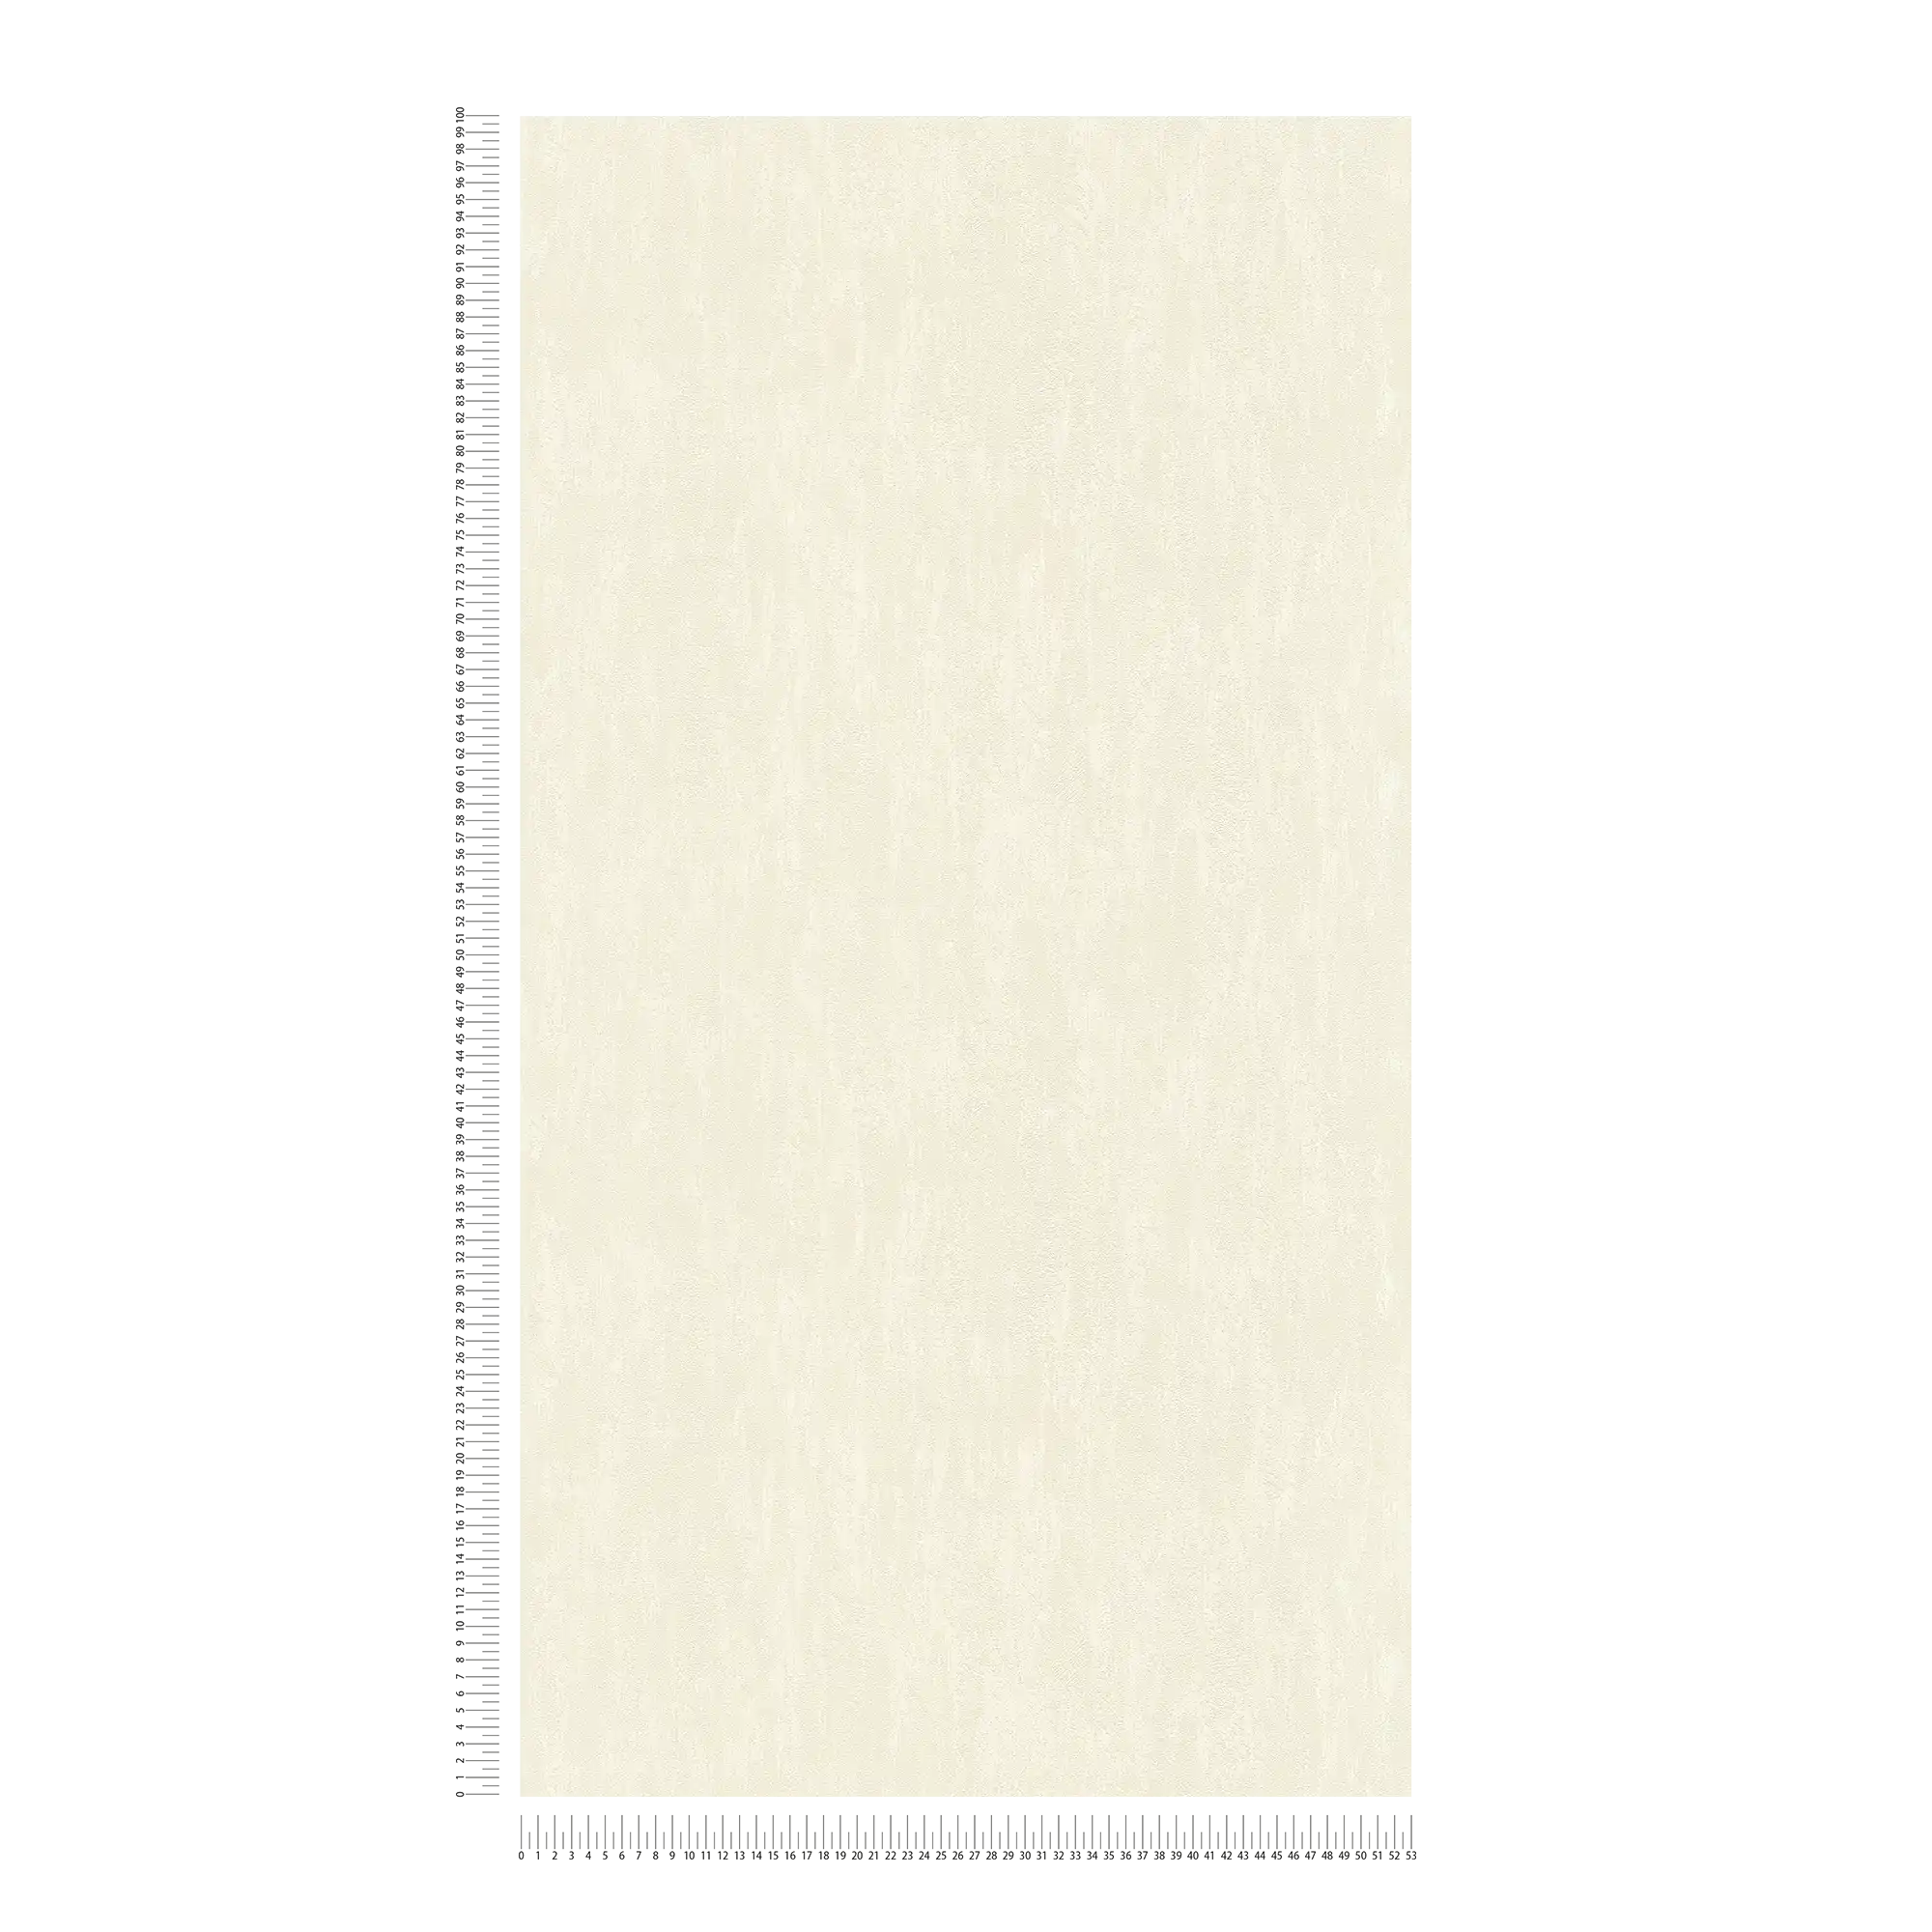             Papier peint uni neutre aspect crépi - crème
        